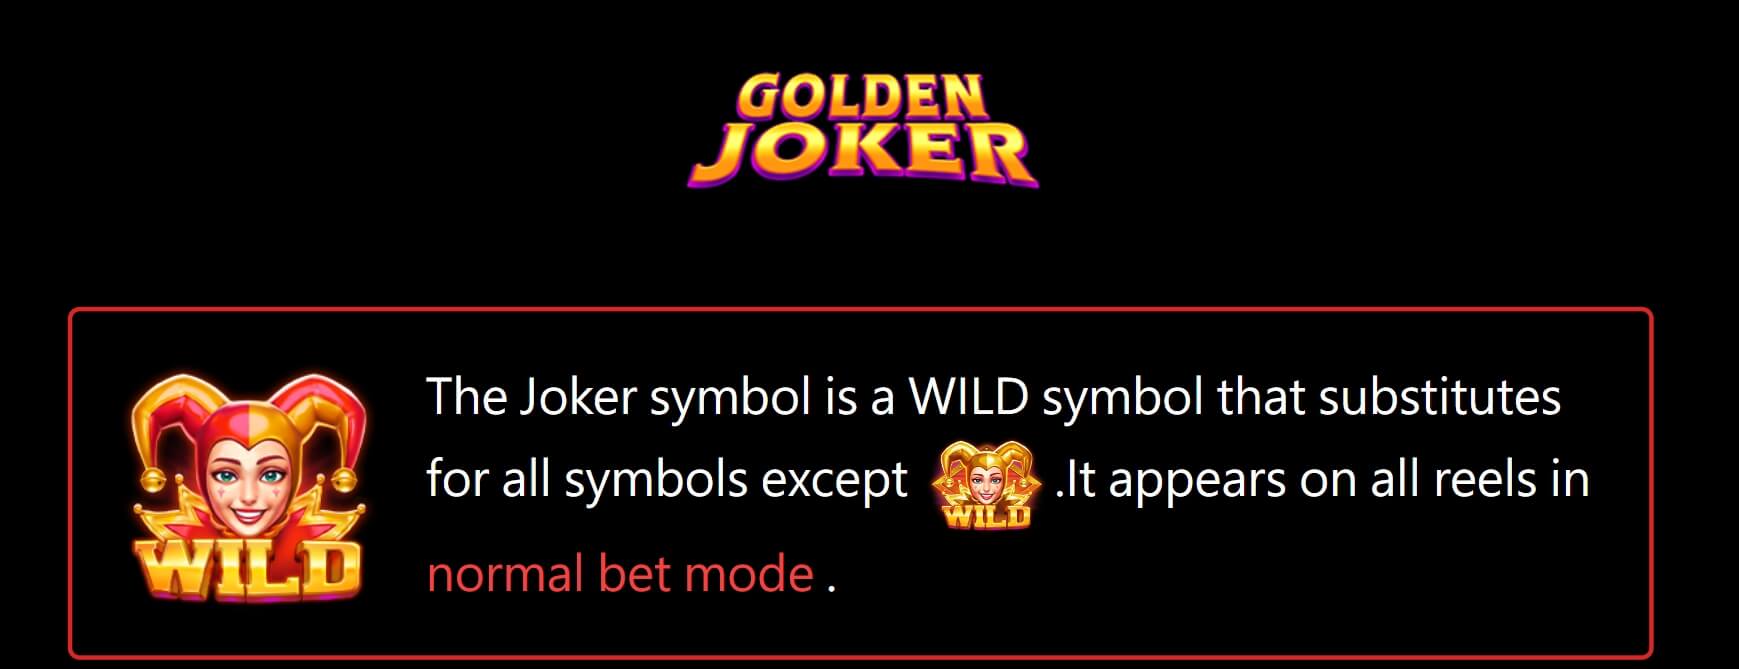 Golden Joker Jili joker slot